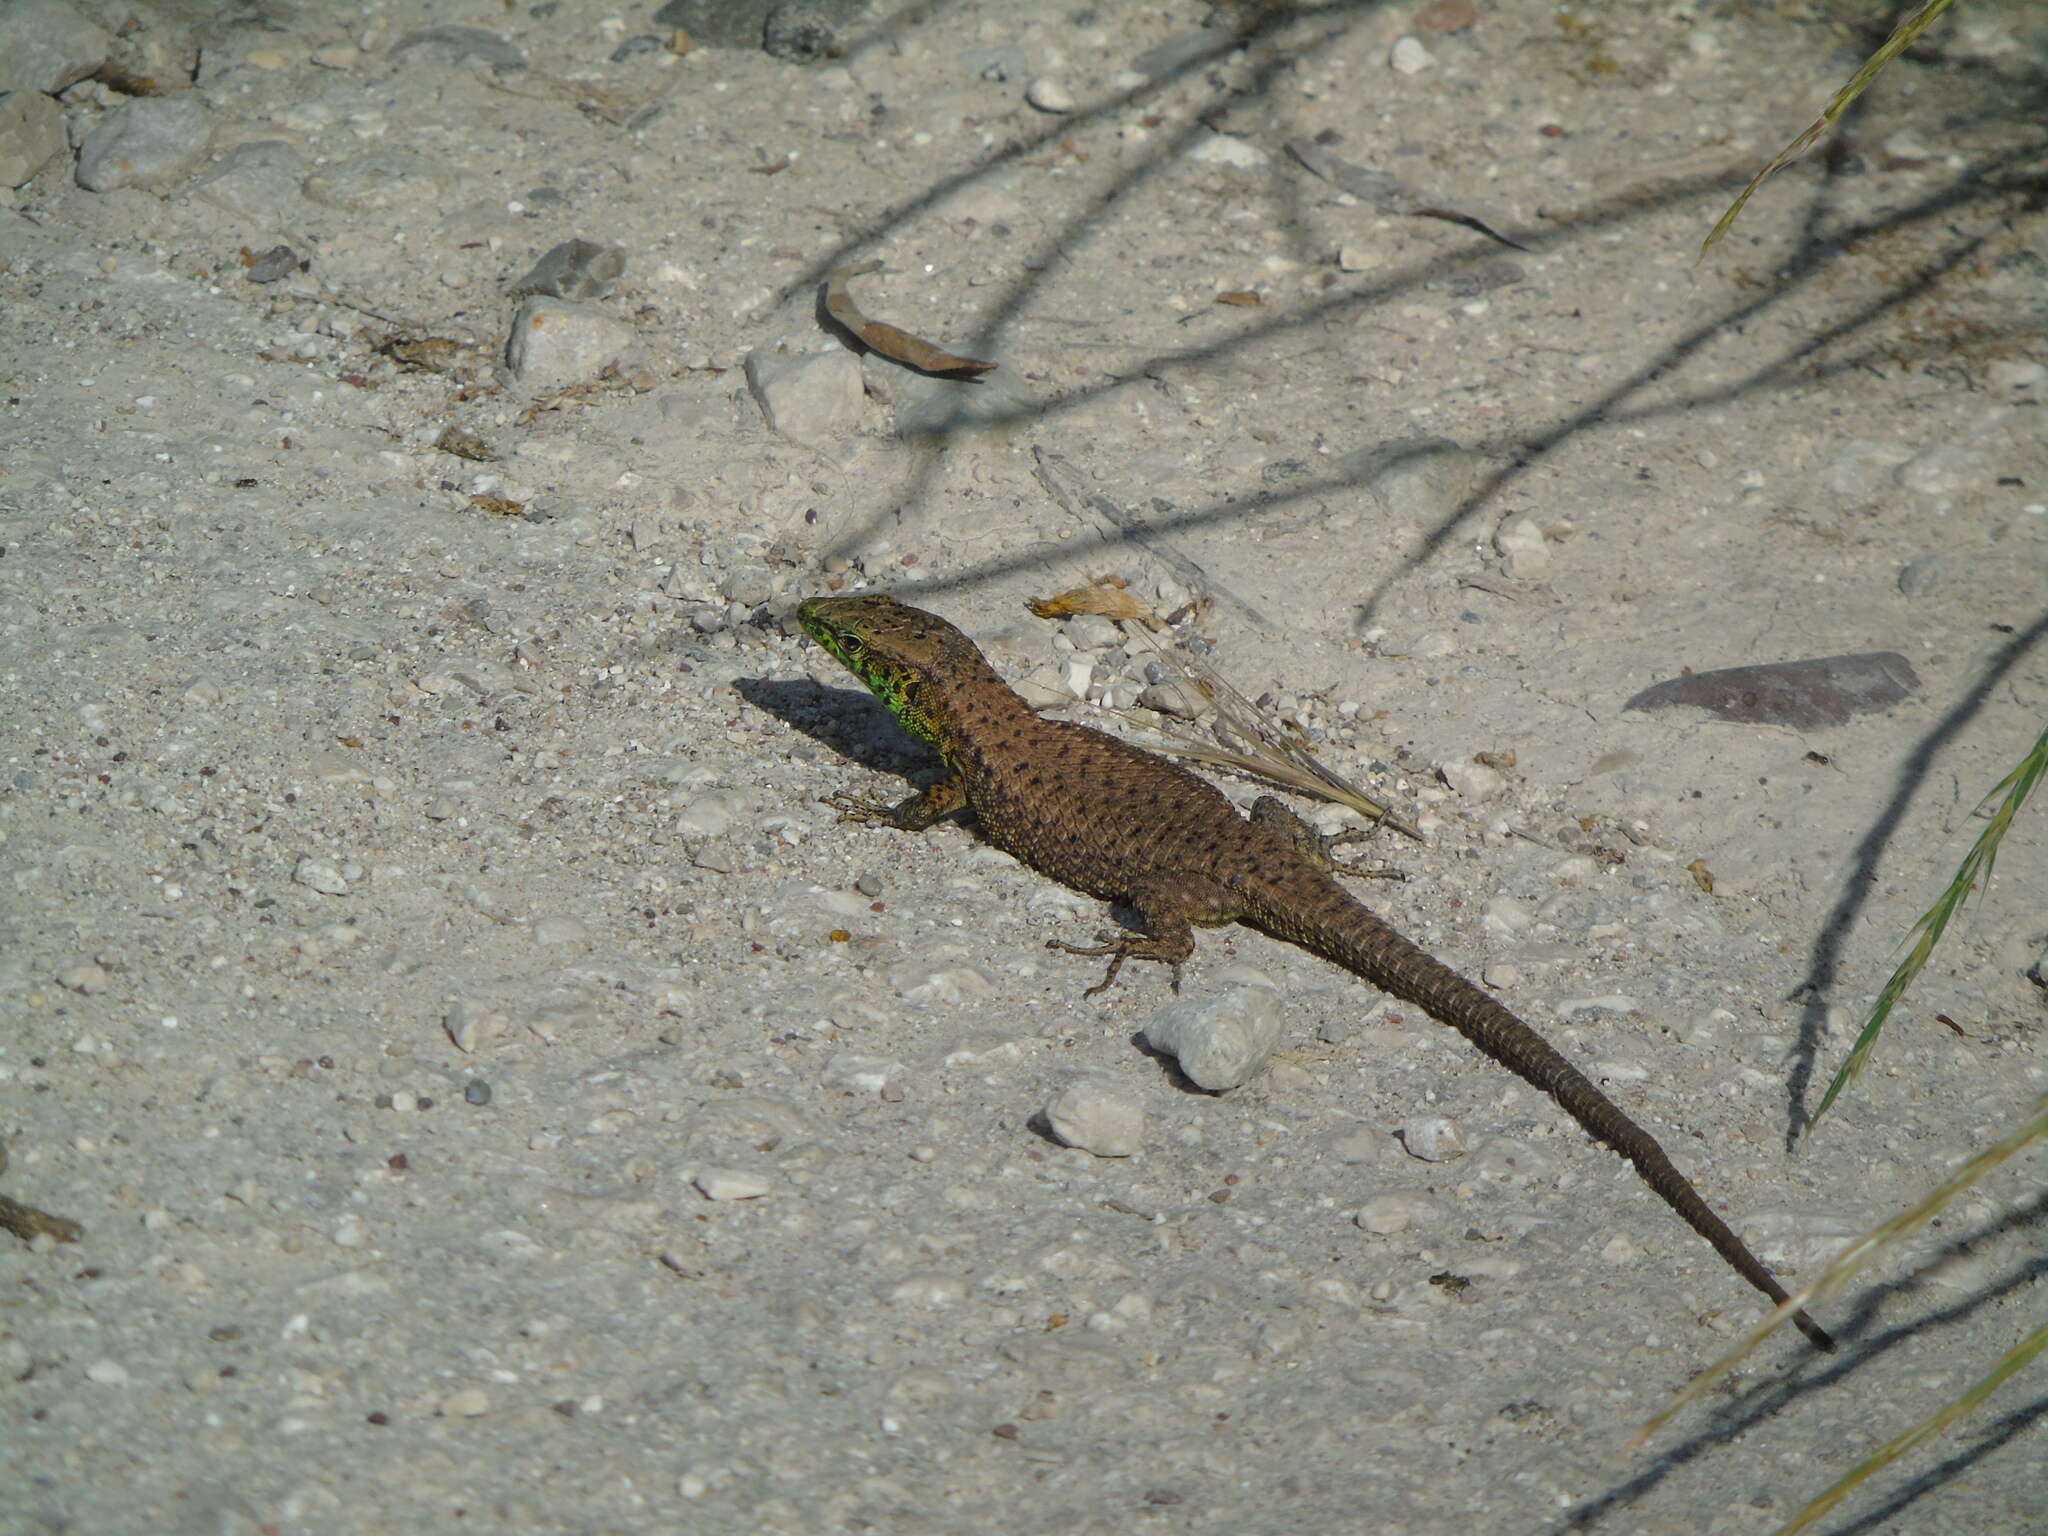 Image of Blue-throated Keeled Lizard